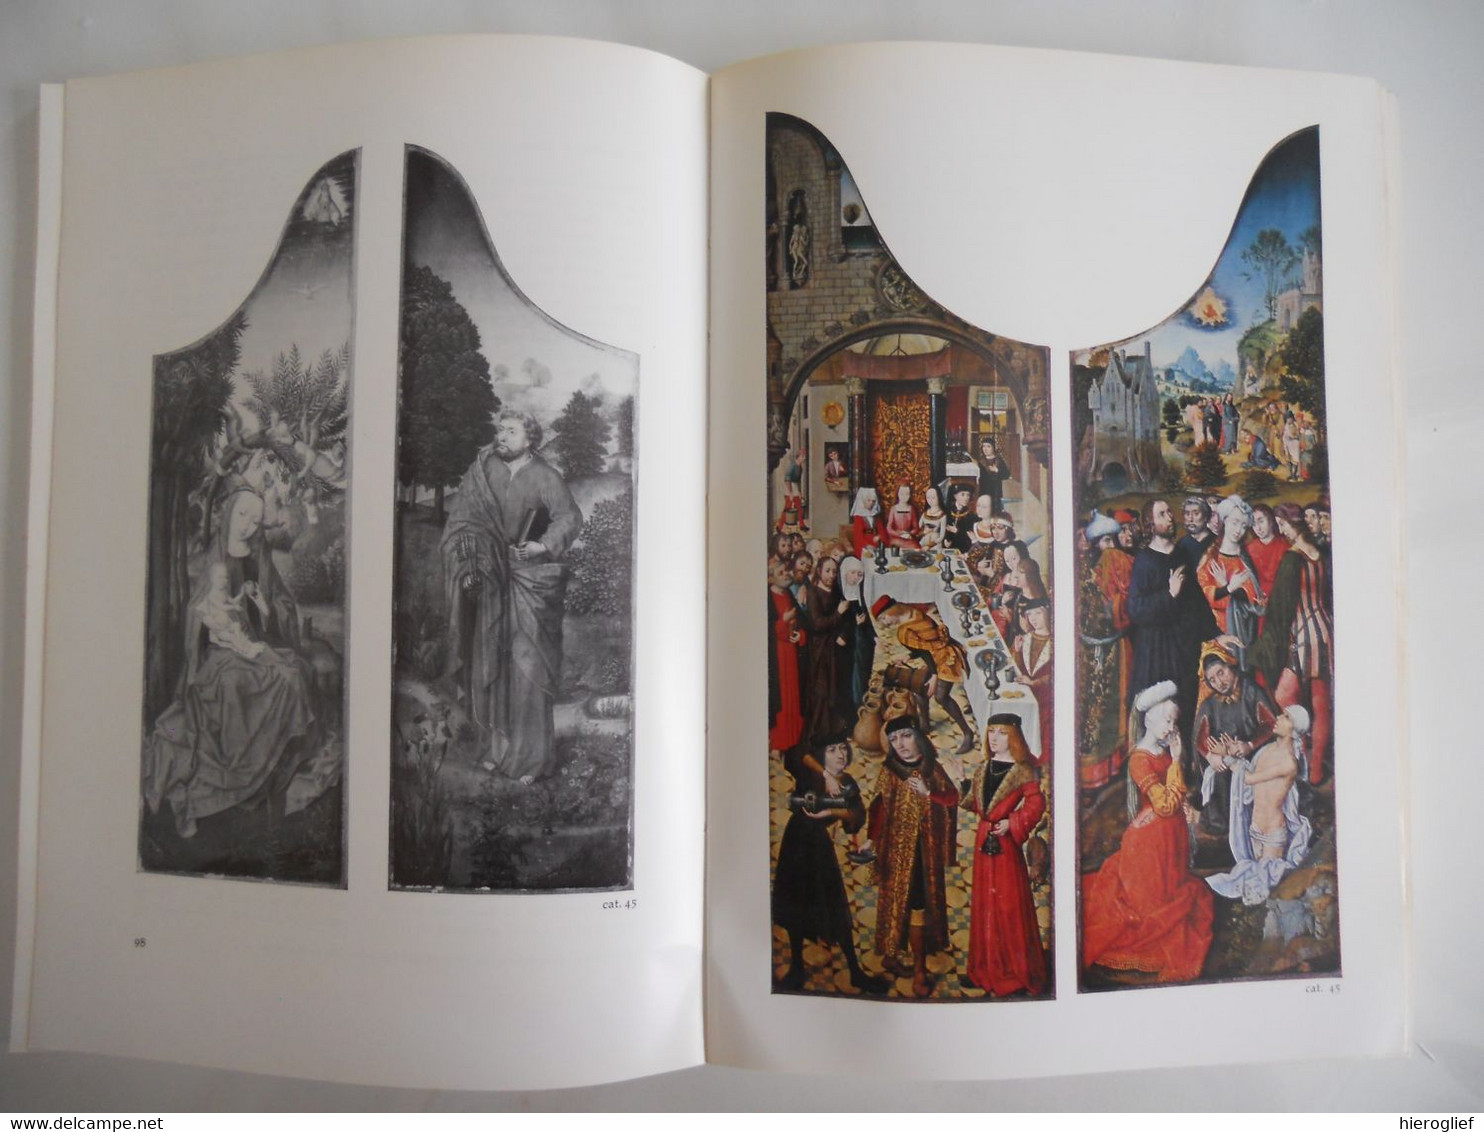 ANONIEME VLAAMSE PRIMITIEVEN catalogus met wetenschappelijke bijdrage tentoonstelling BRUGGE 1969 meesters schilderkunst